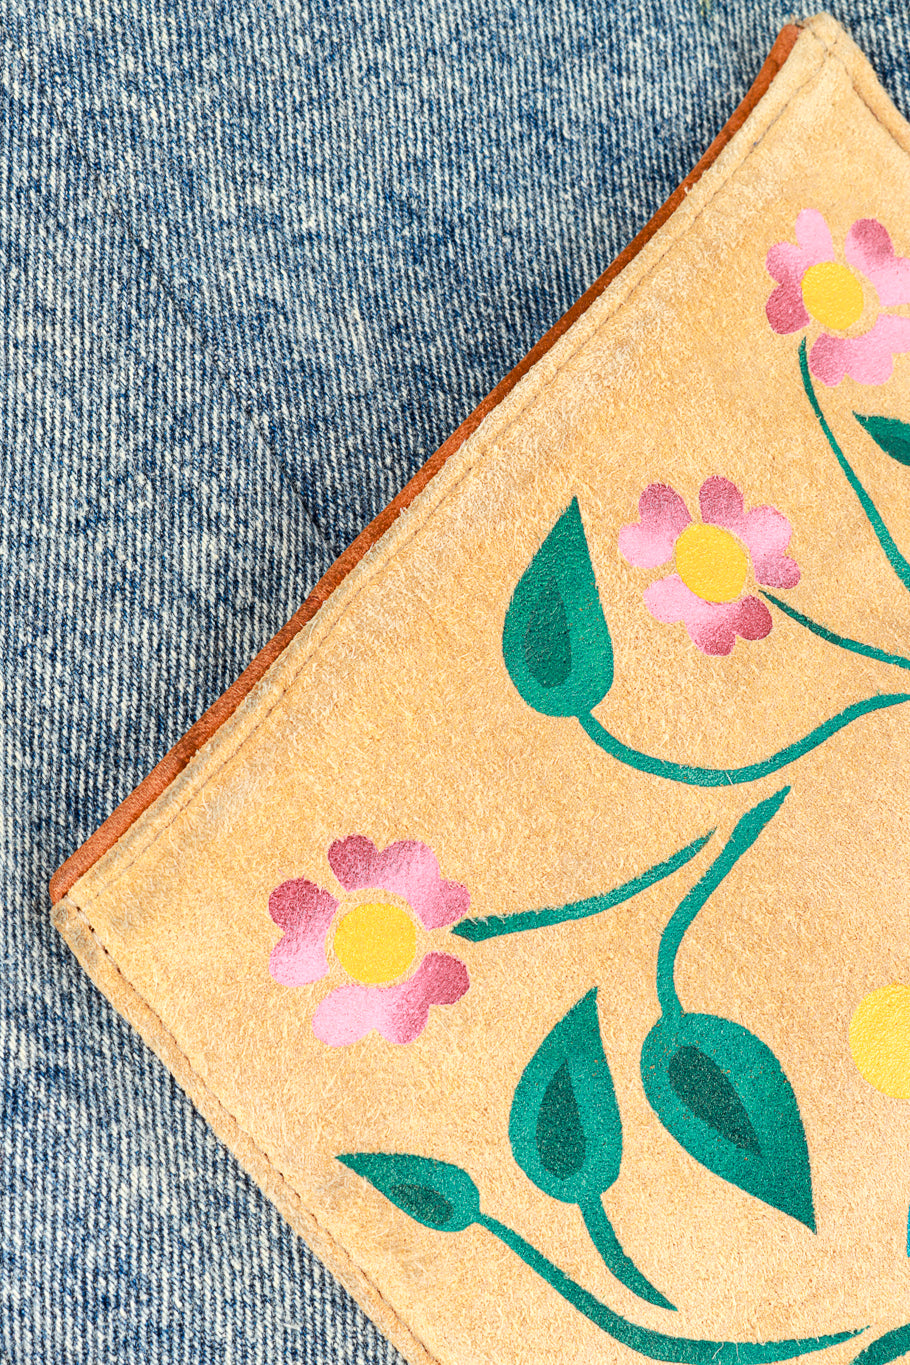 Vintage Char Floral Painted Denim & Suede Jacket front patch pocket closeup @recess la